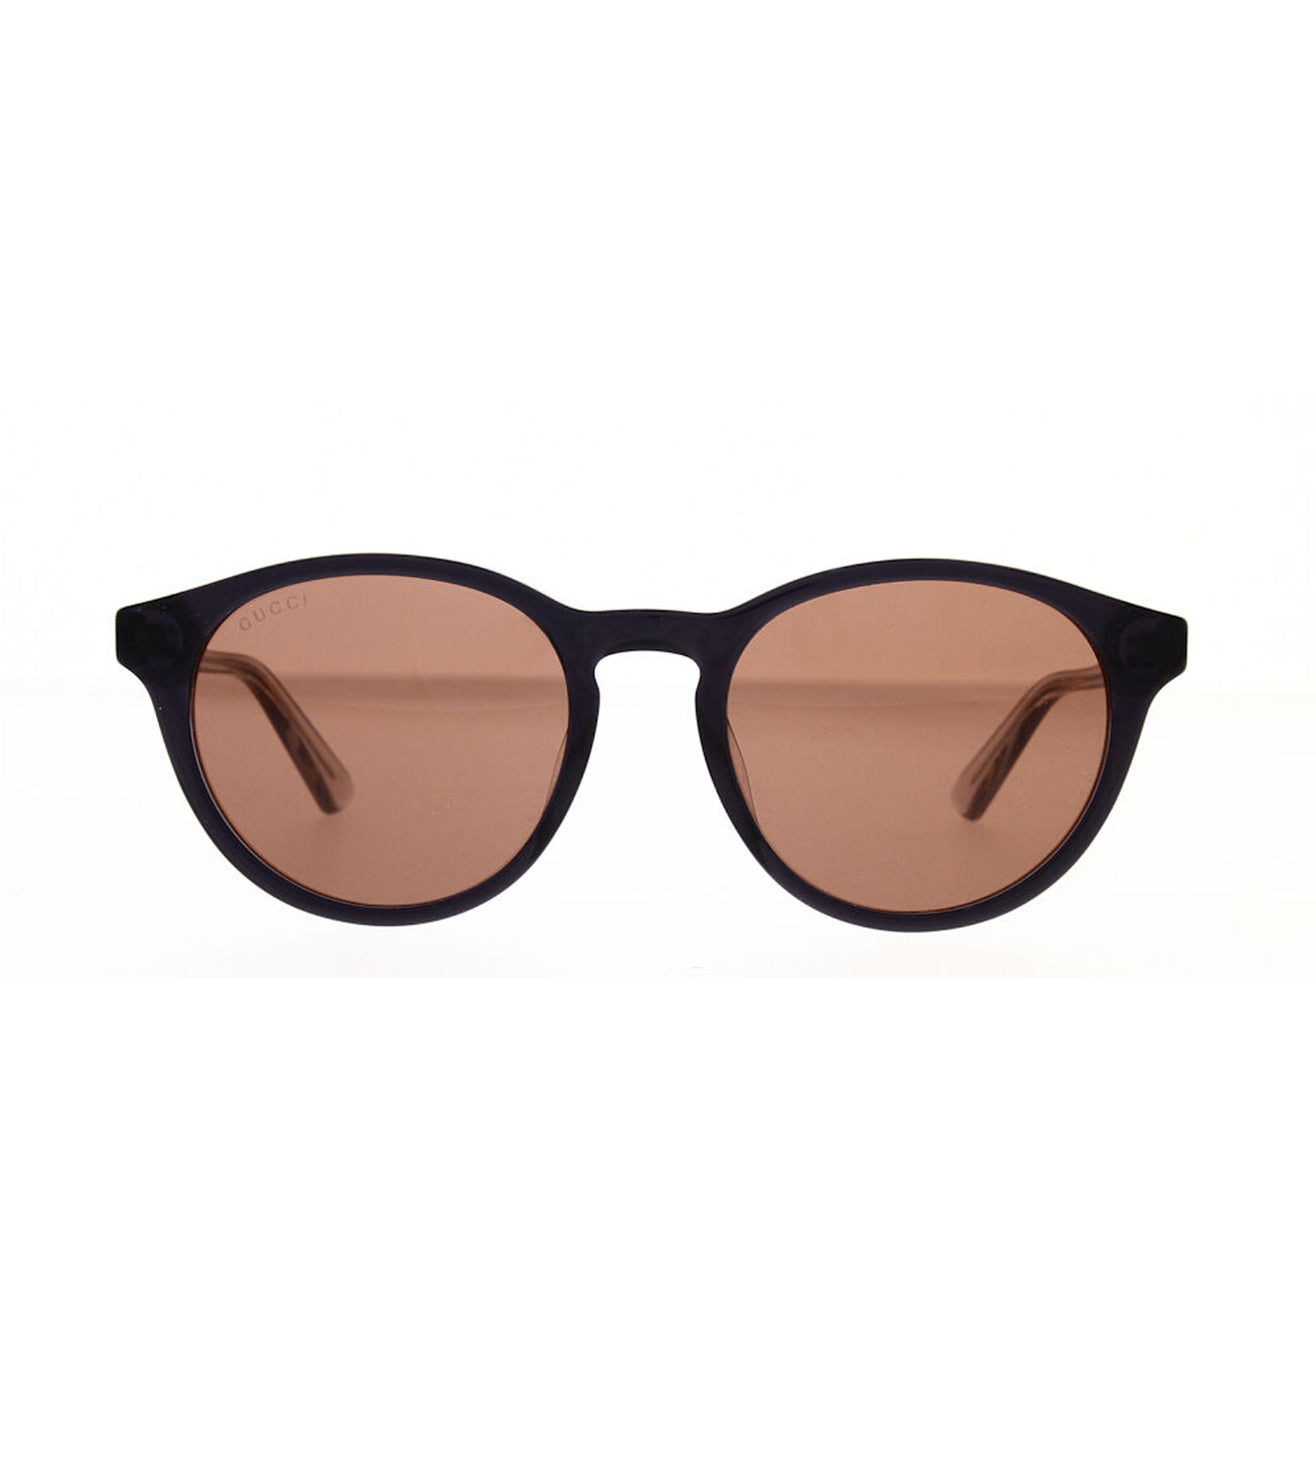 Gucci Men's Brown Round Sunglasses